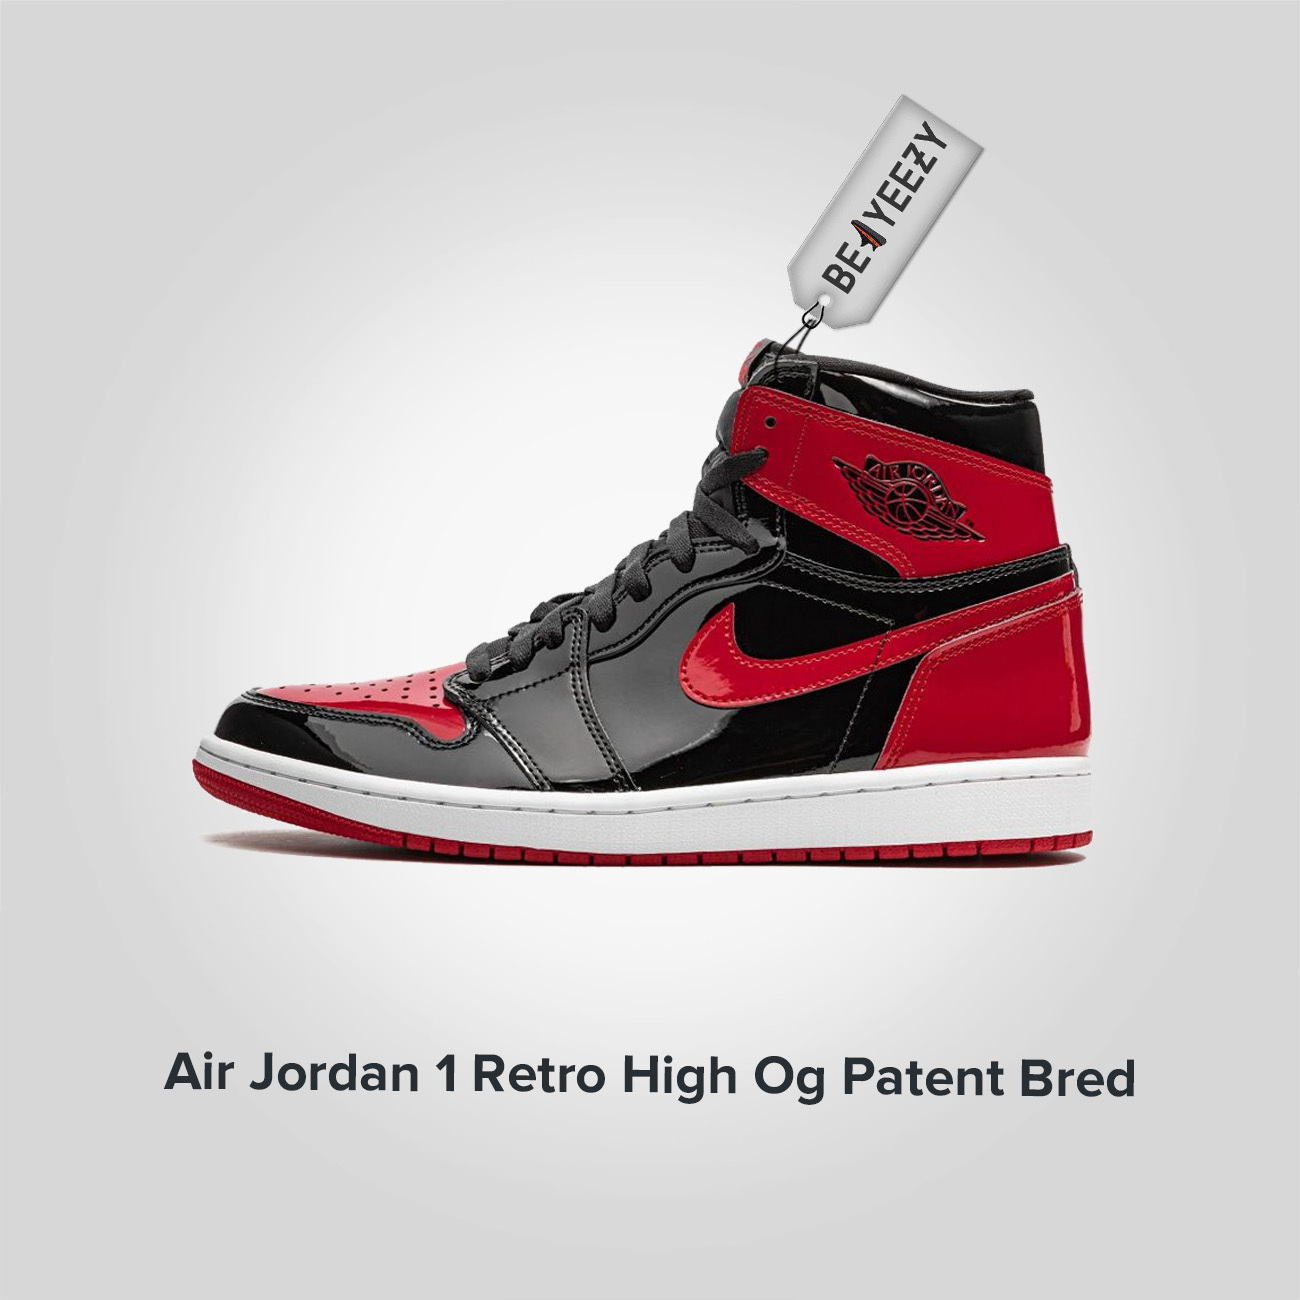 Jordan 1 Retro High OG Patent Bred